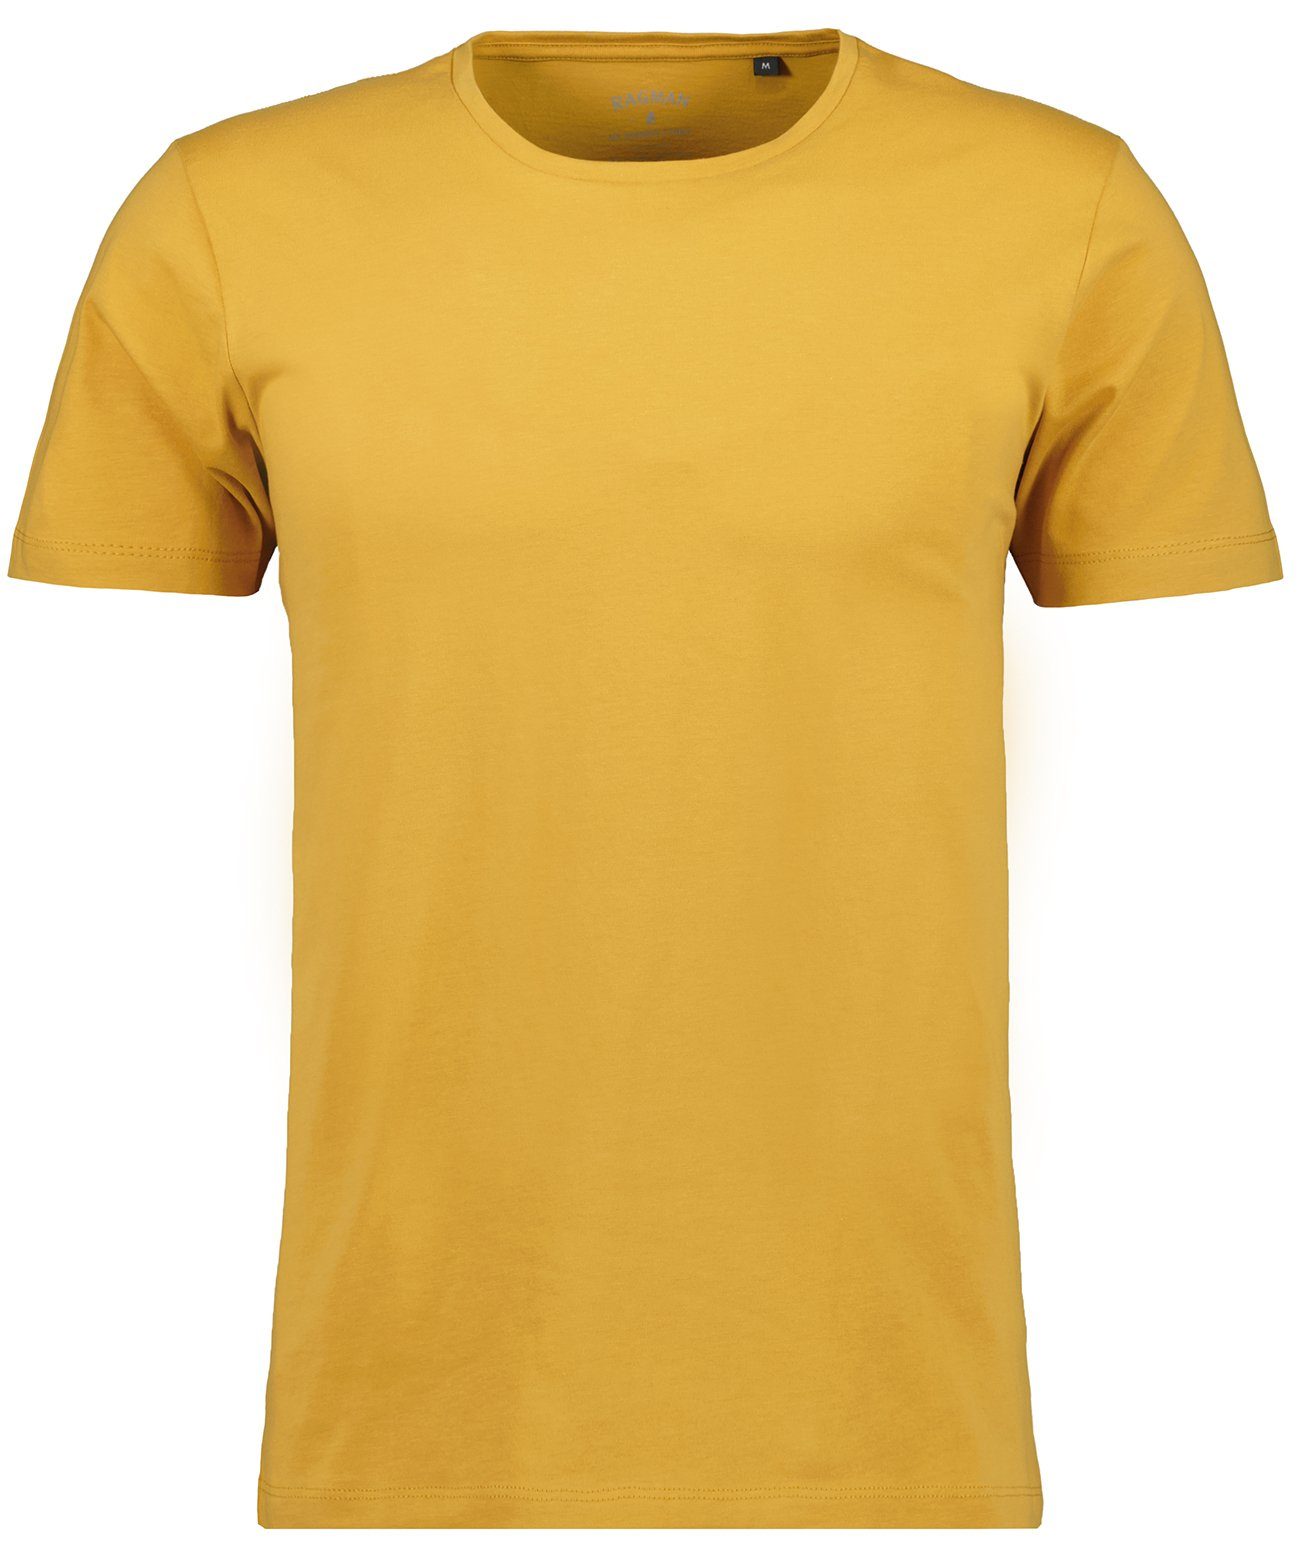 RAGMAN T-Shirt Kürbis-536